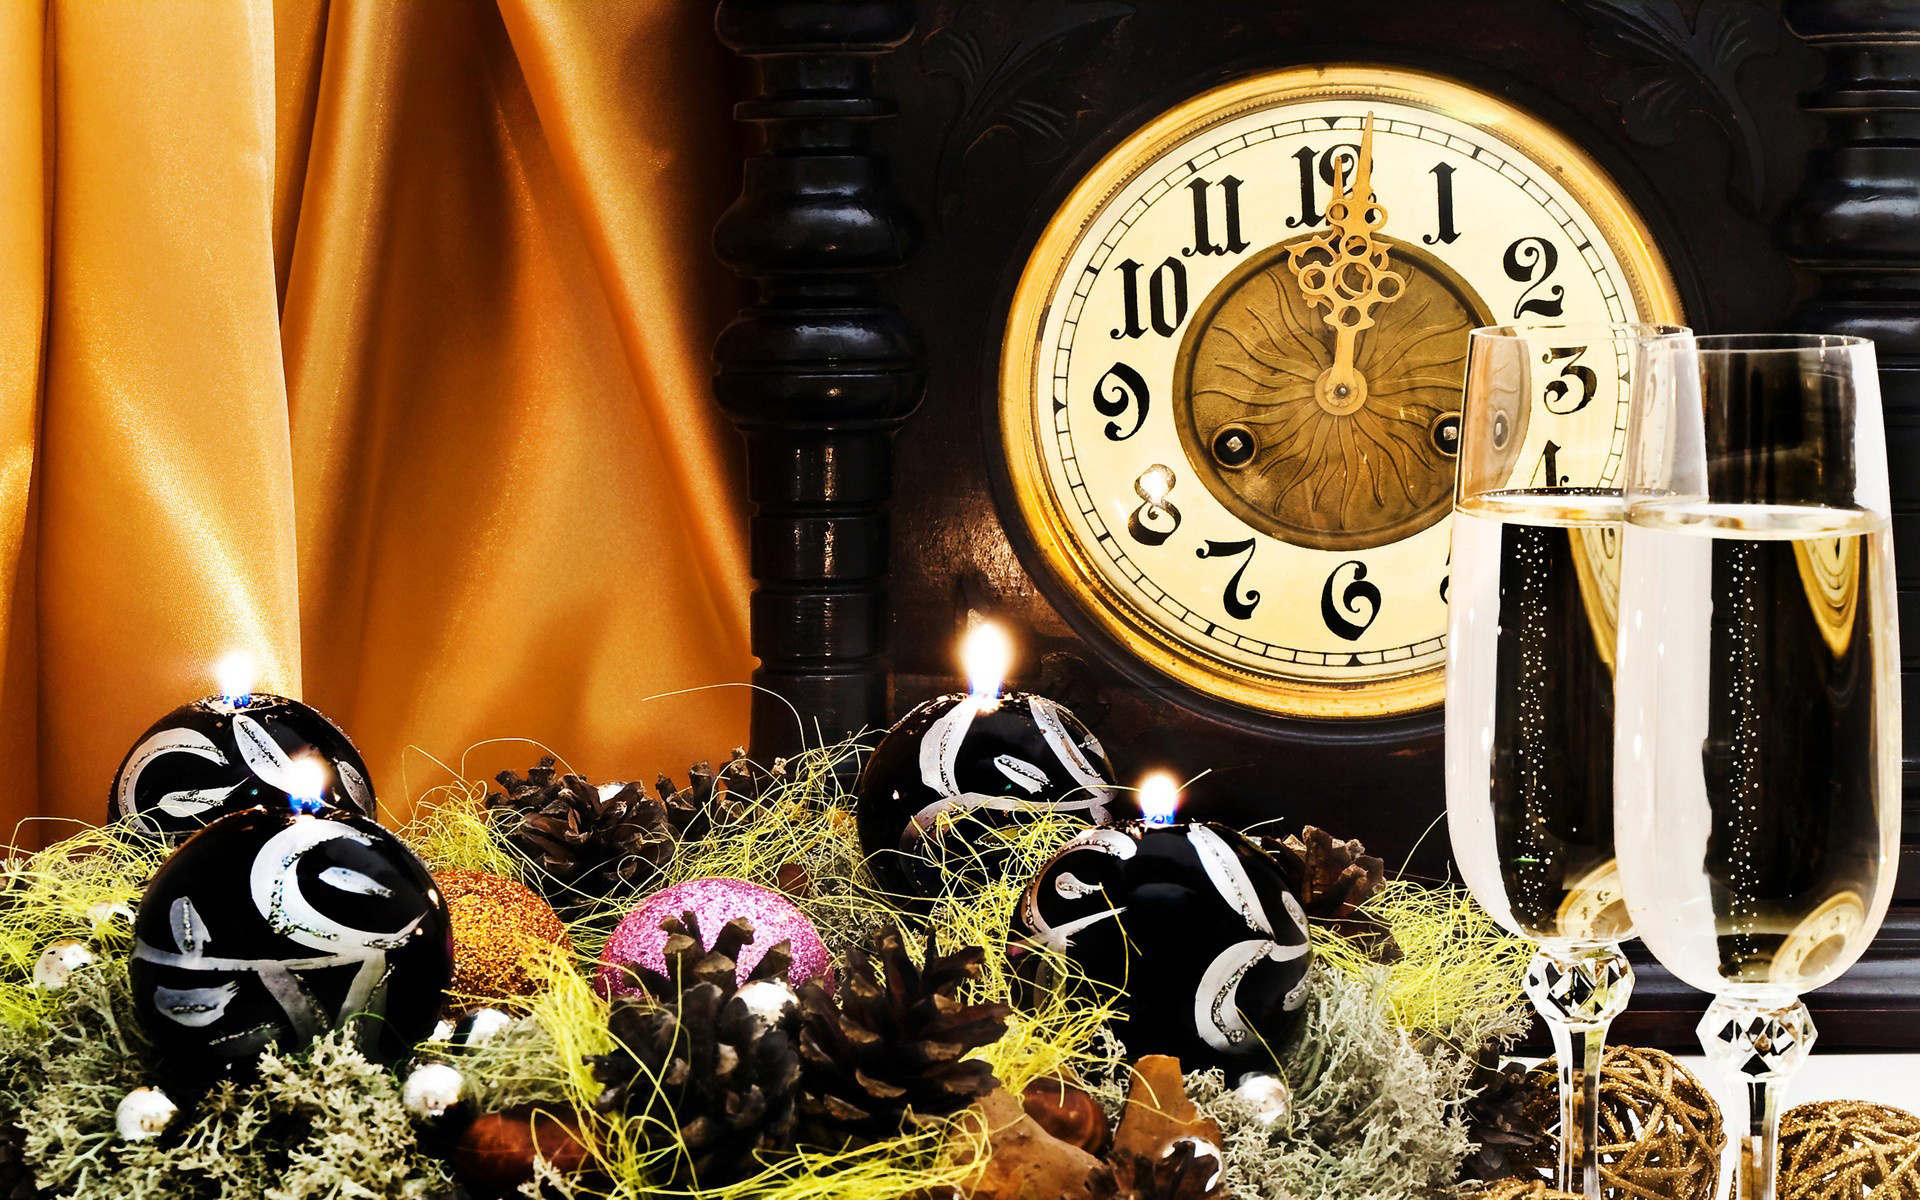 Descarga gratis la imagen Año Nuevo, Día Festivo en el escritorio de tu PC